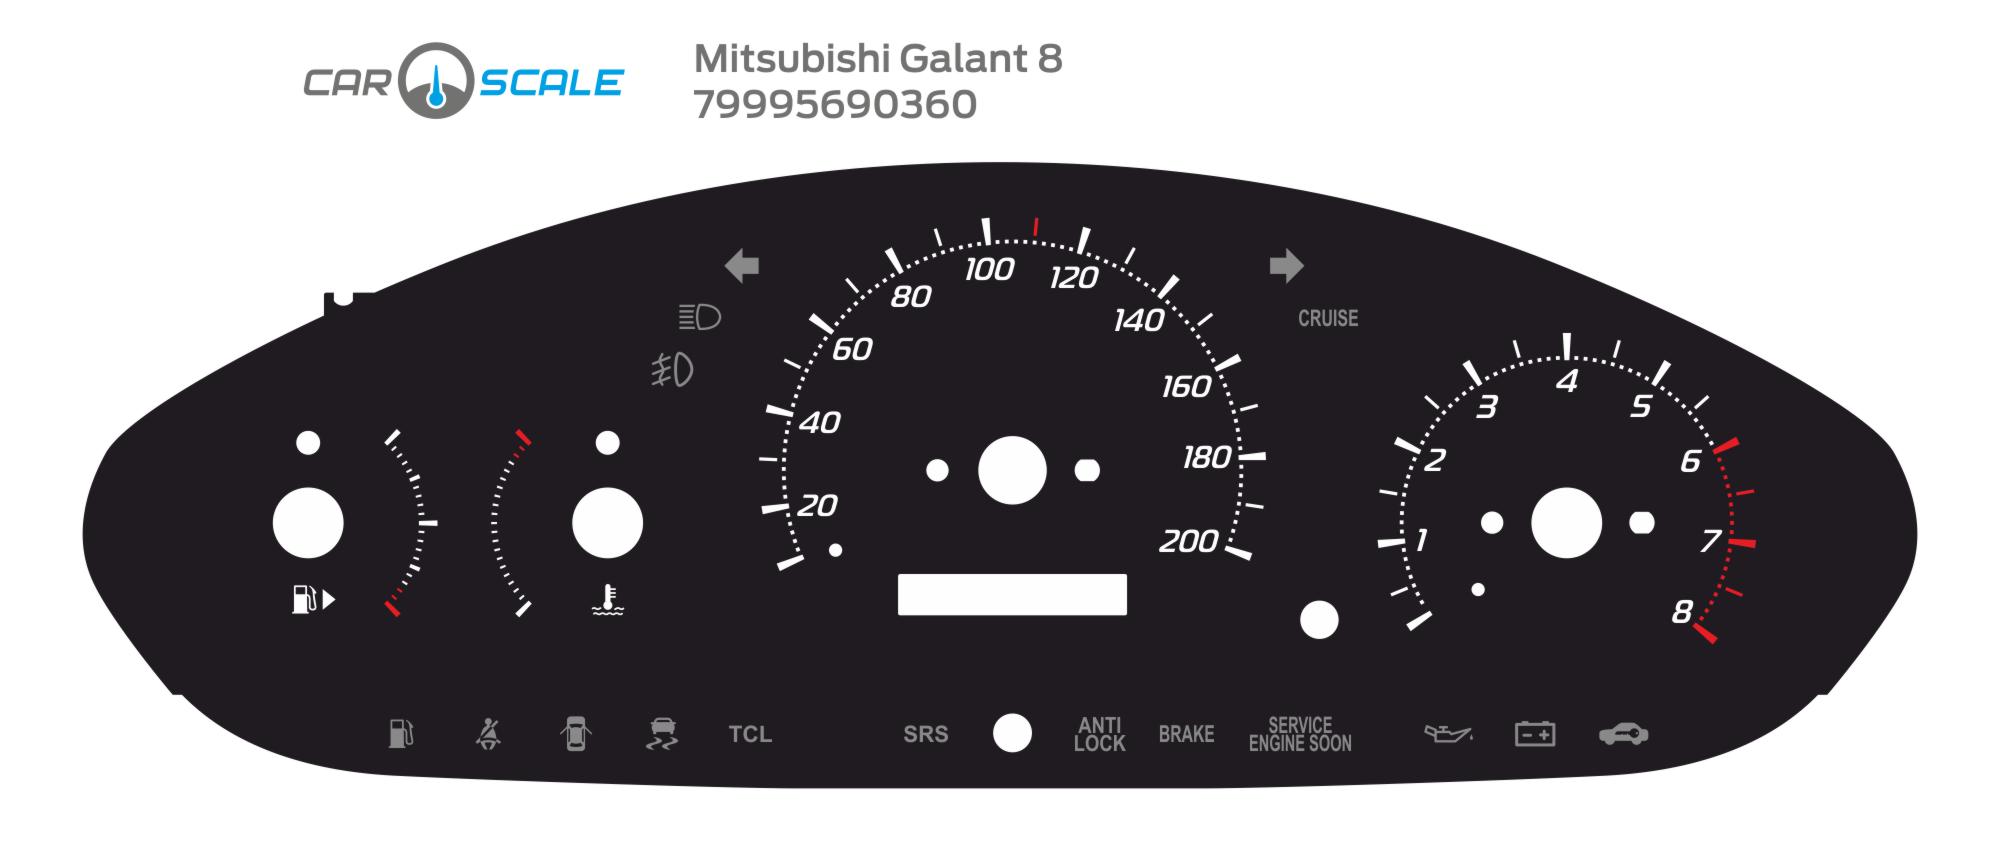 MITSUBISHI GALANT 8 10